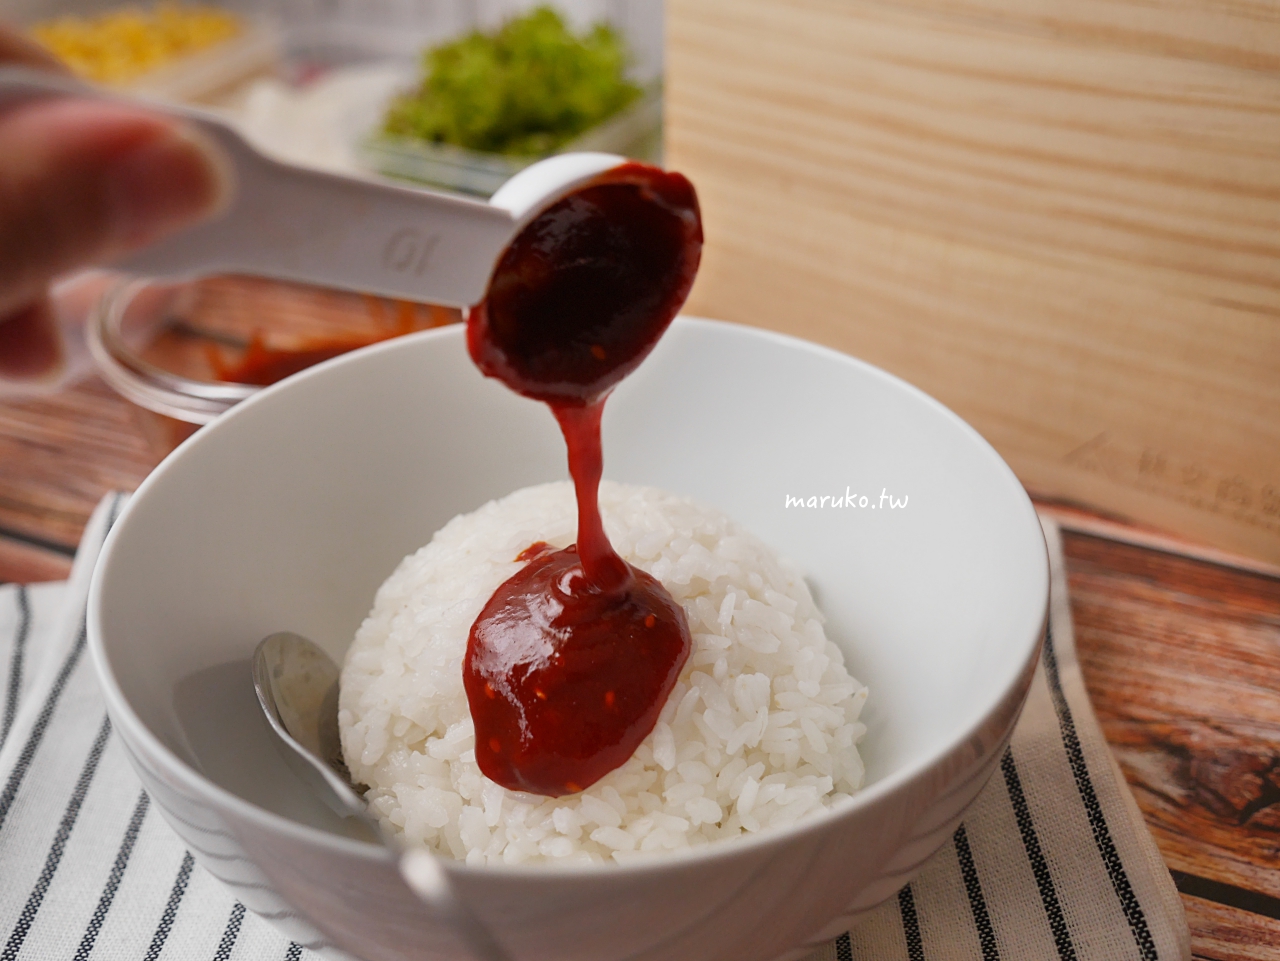 【食譜】韓式香腸起司玉米辣味紫菜包飯 這樣做更爽口 秋文商號 儲米盒實用心得分享 @Maruko與美食有個約會